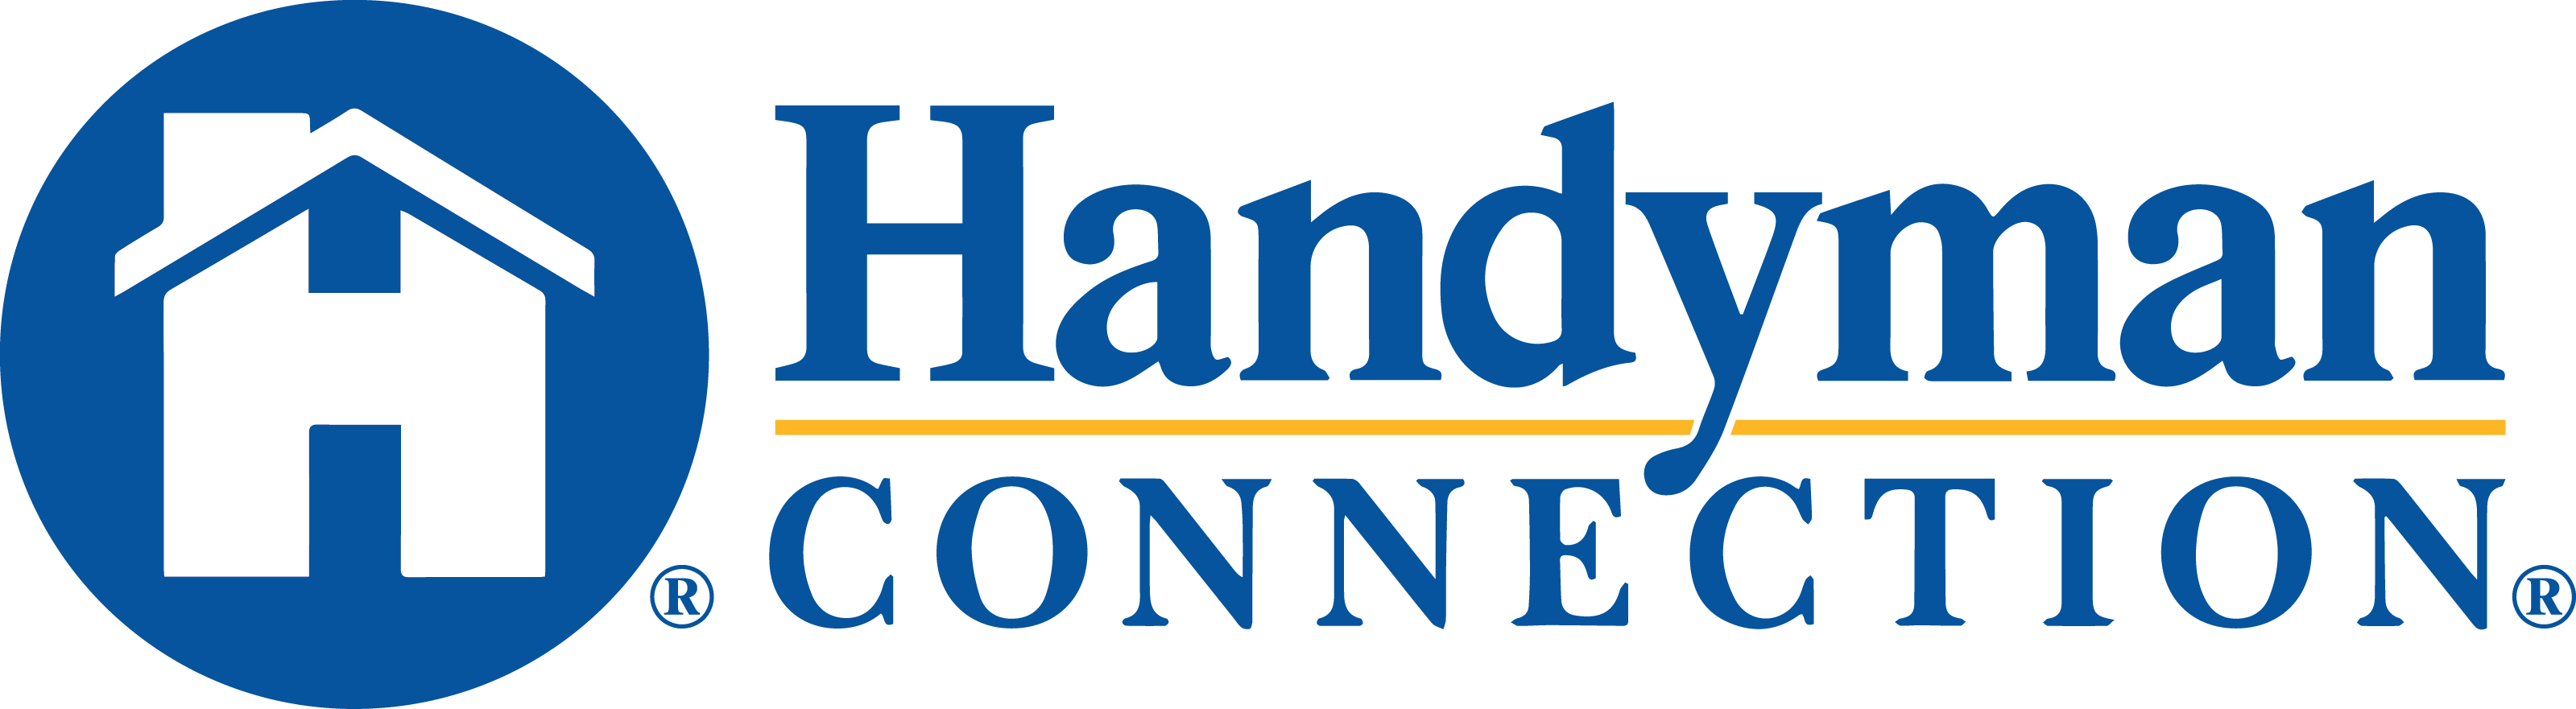 https://handymanconnection.com/mount-pleasant/wp-content/uploads/sites/33/2021/05/HandymanConnection-logo-2-1.png